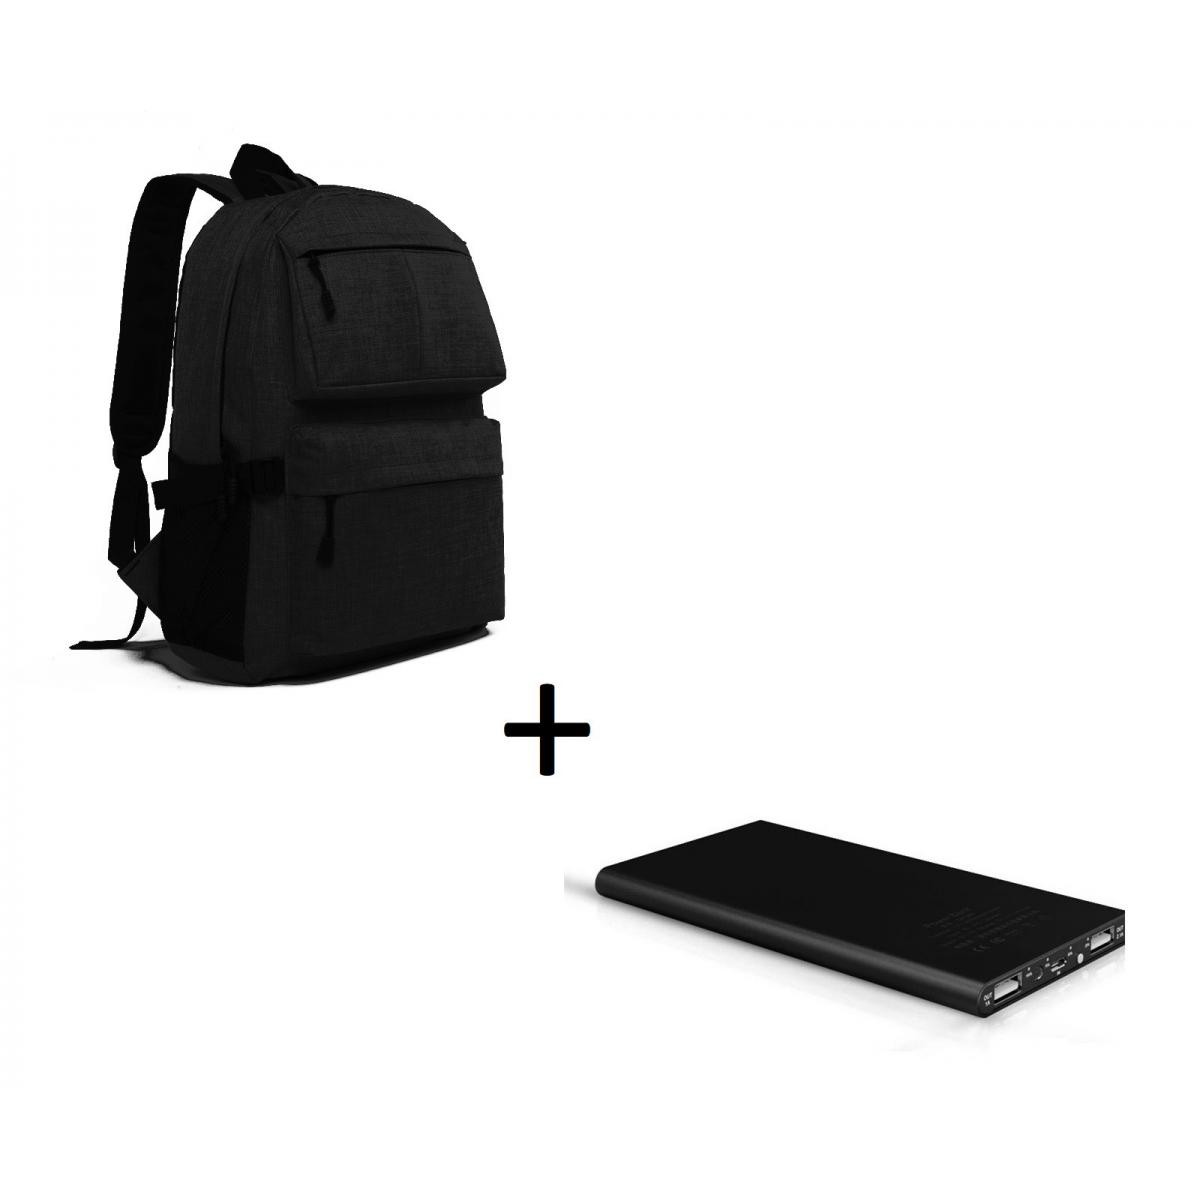 Shot - Pack pour SAMSUNG Galaxy Z Flip Smartphone (Batterie Plate 6000 mAh 2 ports + Sac à dos avec prise USB integre) (NOIR) - Chargeur secteur téléphone